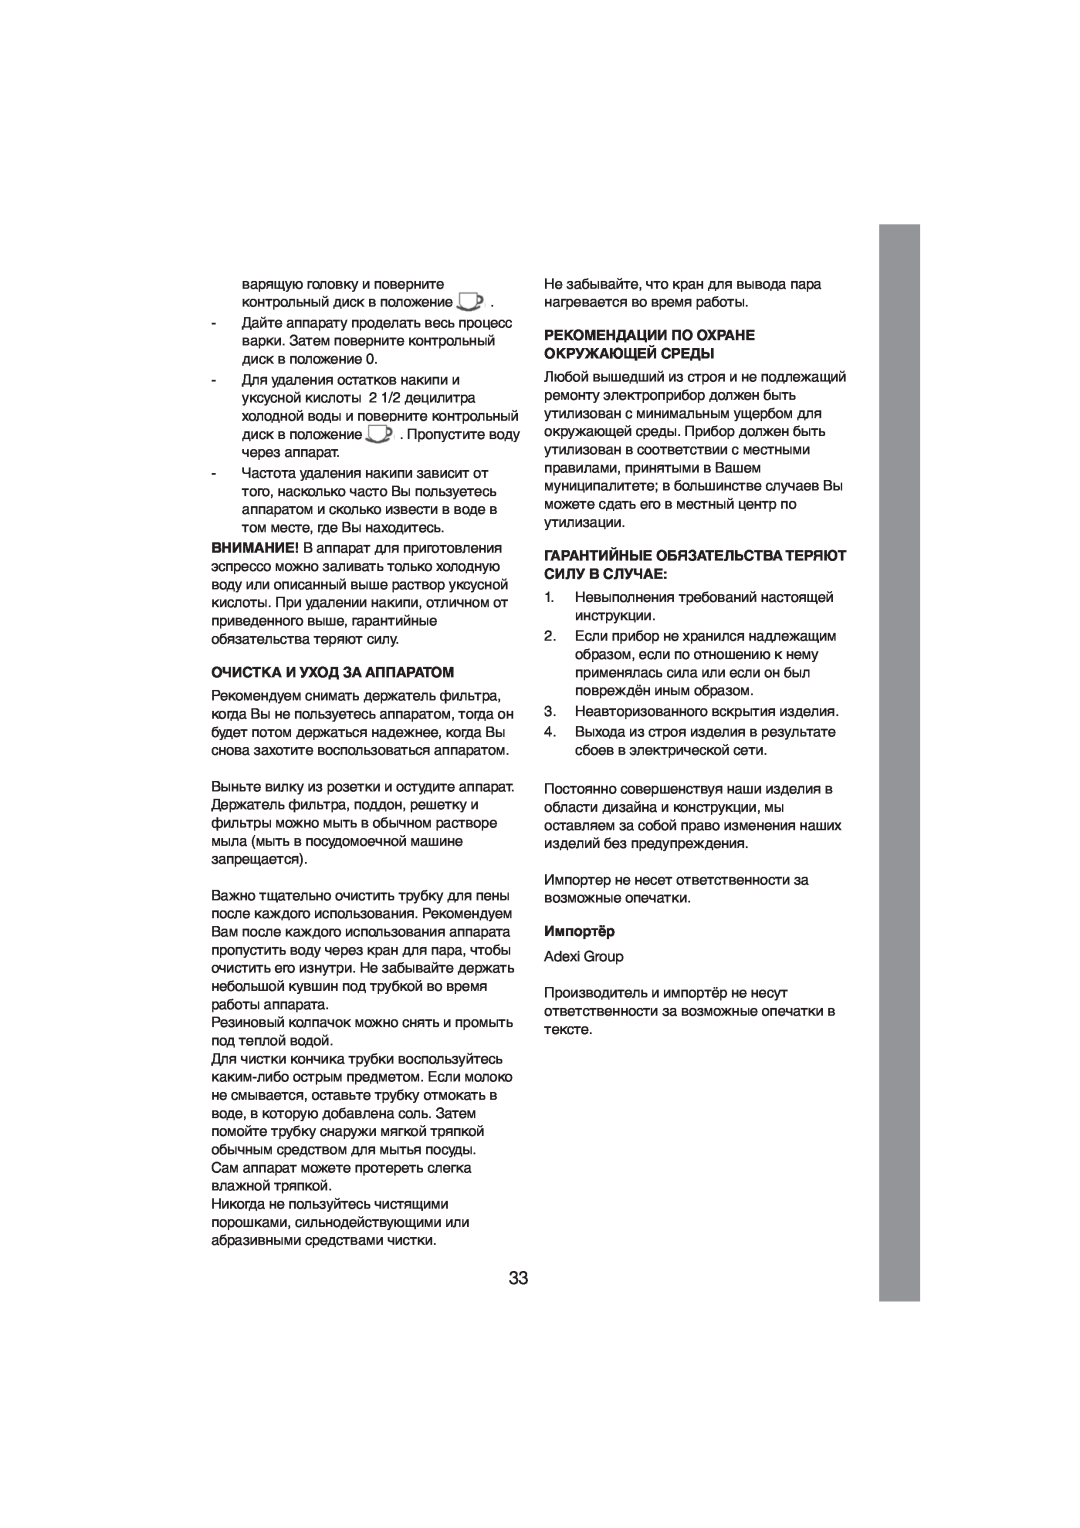 Melissa 245-027 manual Очистка И Уход За Аппаратом, Рекомендации По Охране Окружающей Среды, Импортёр 